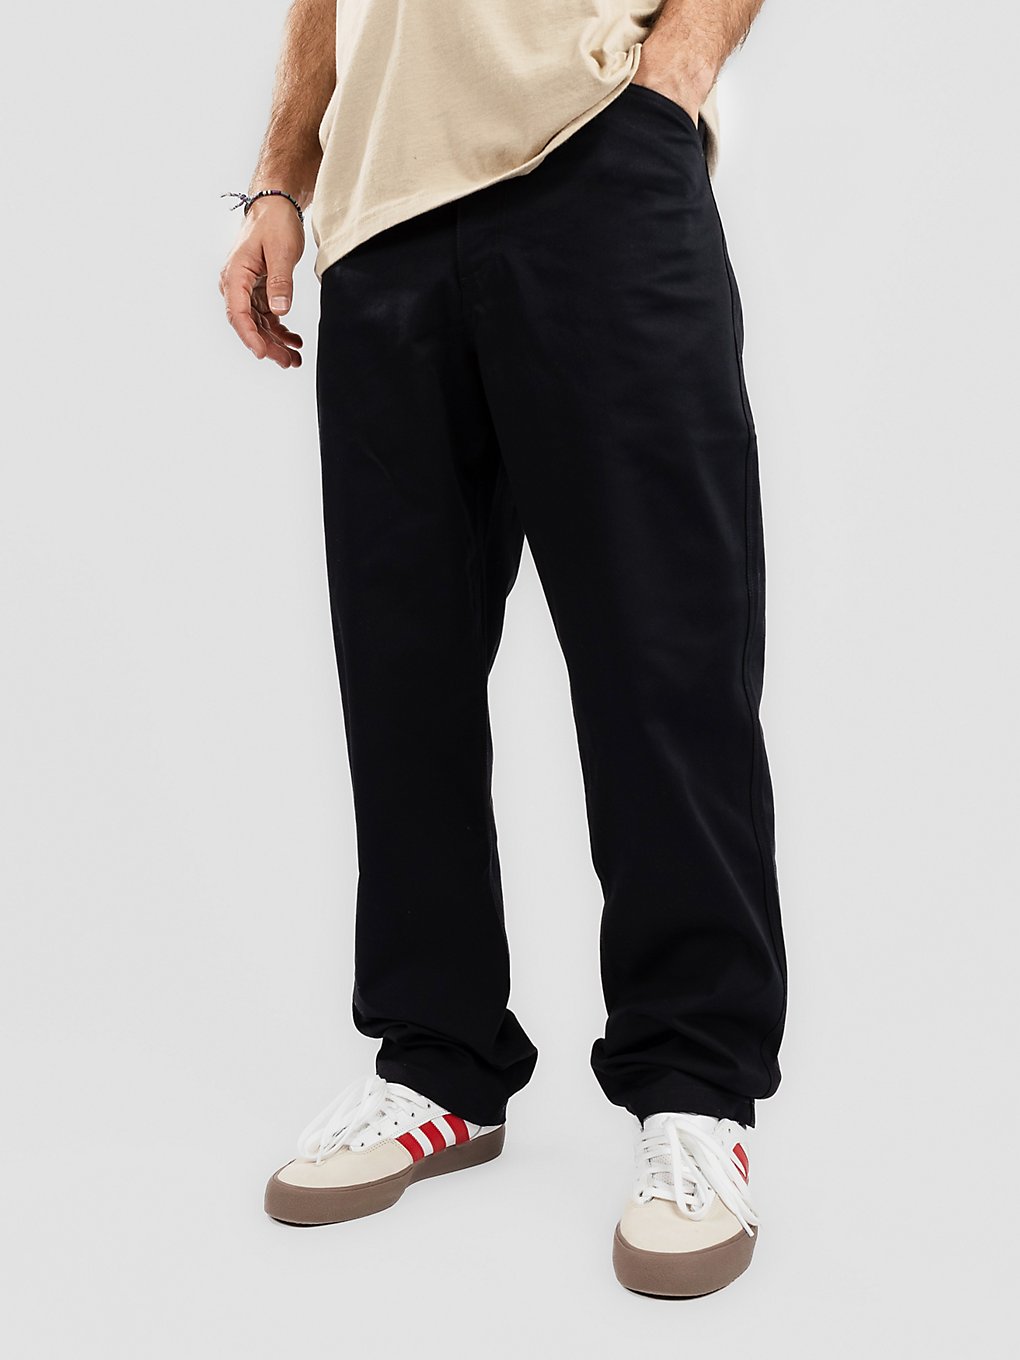 Nike SB New Pants svart